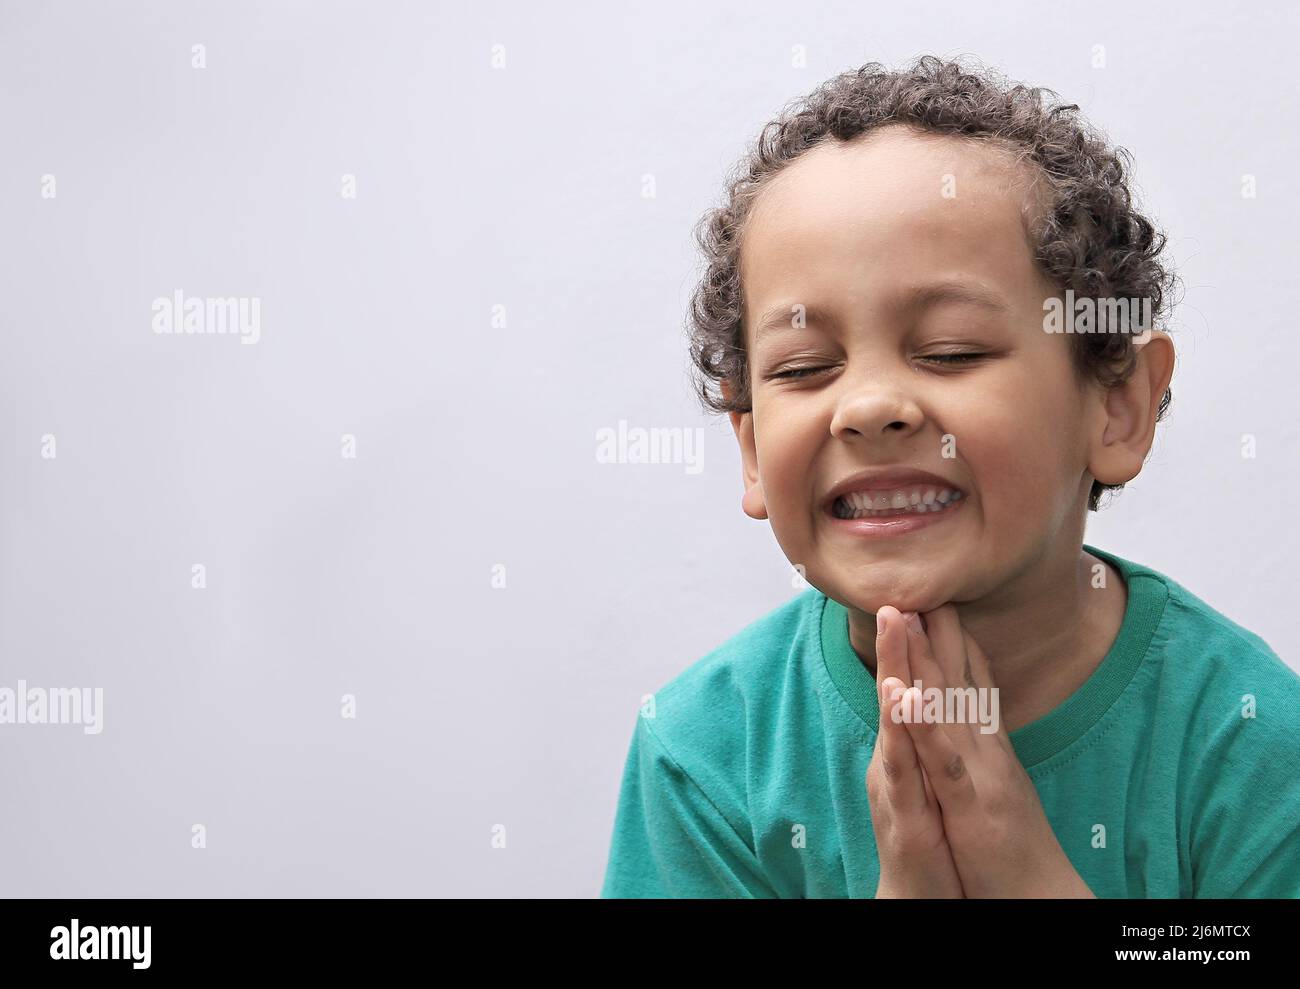 Petit garçon priant à Dieu avec les mains avec la photo de fond noire Banque D'Images